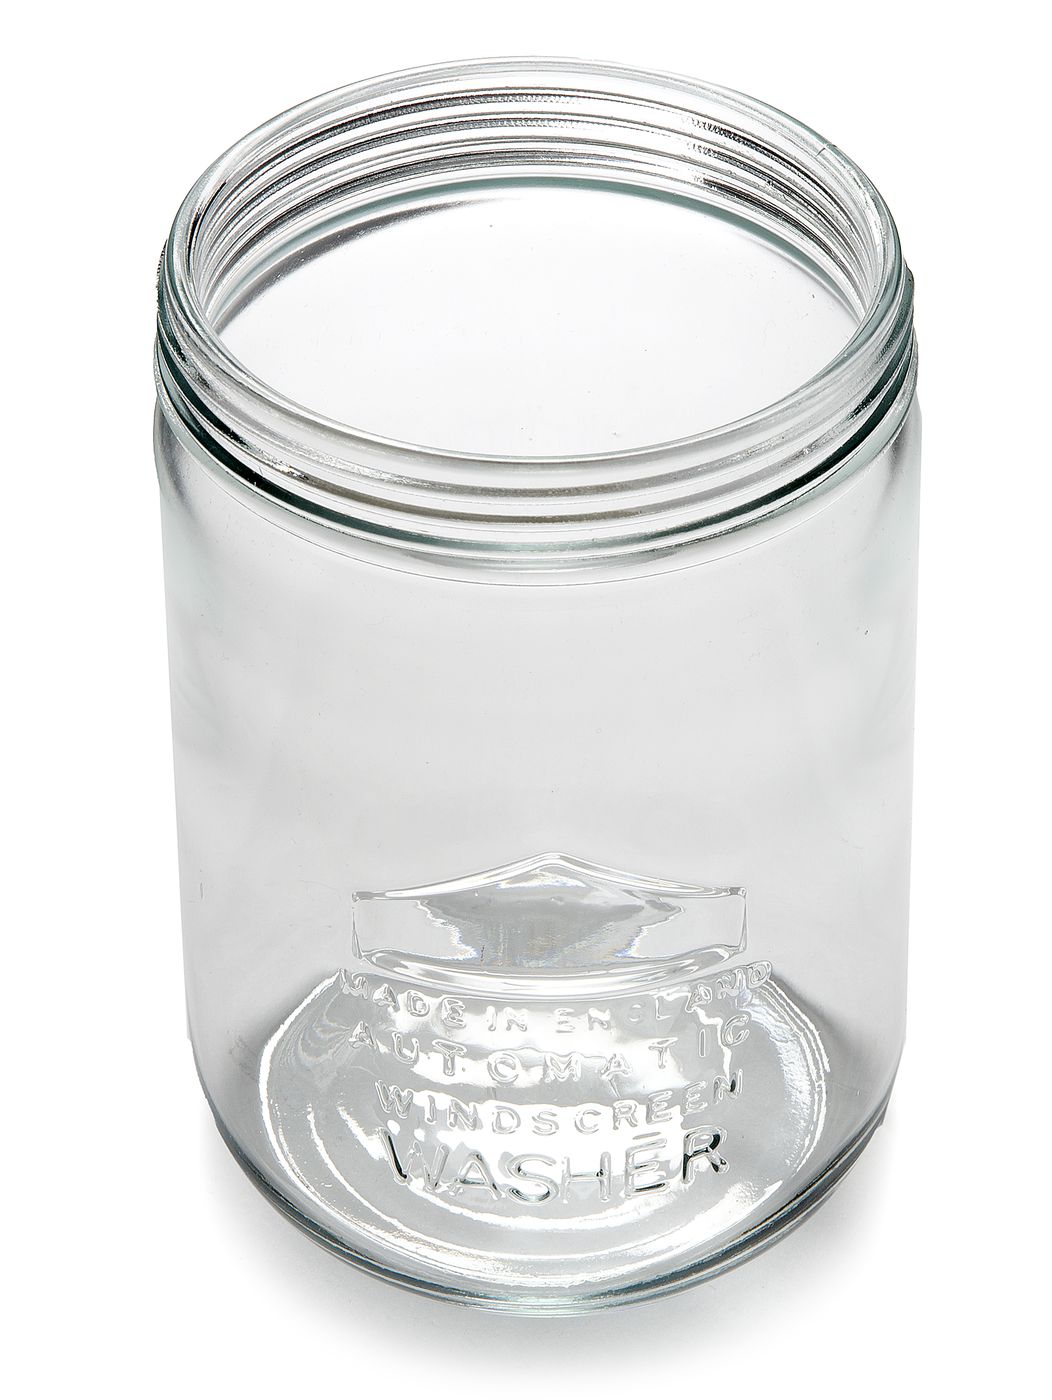 Glasbehälter
Glass container
Bidon en verre
Glazen recipiënt
R